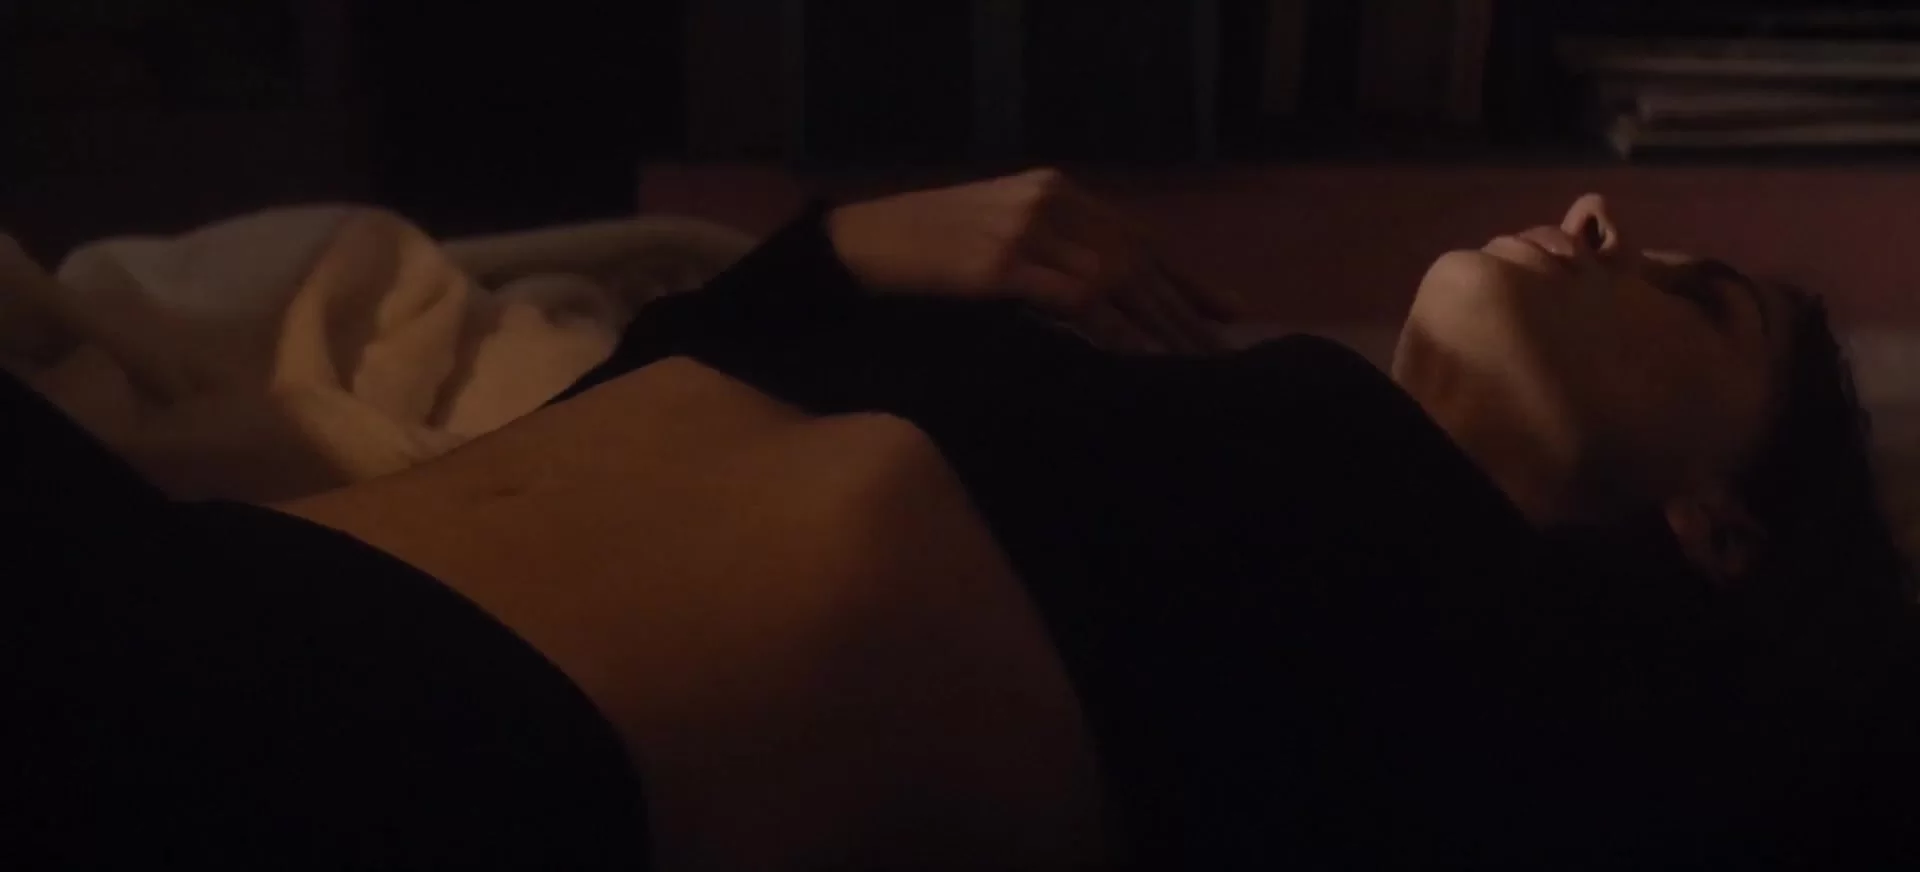 Housewife - Masturbation Scenes in Movies erotic sex scenes